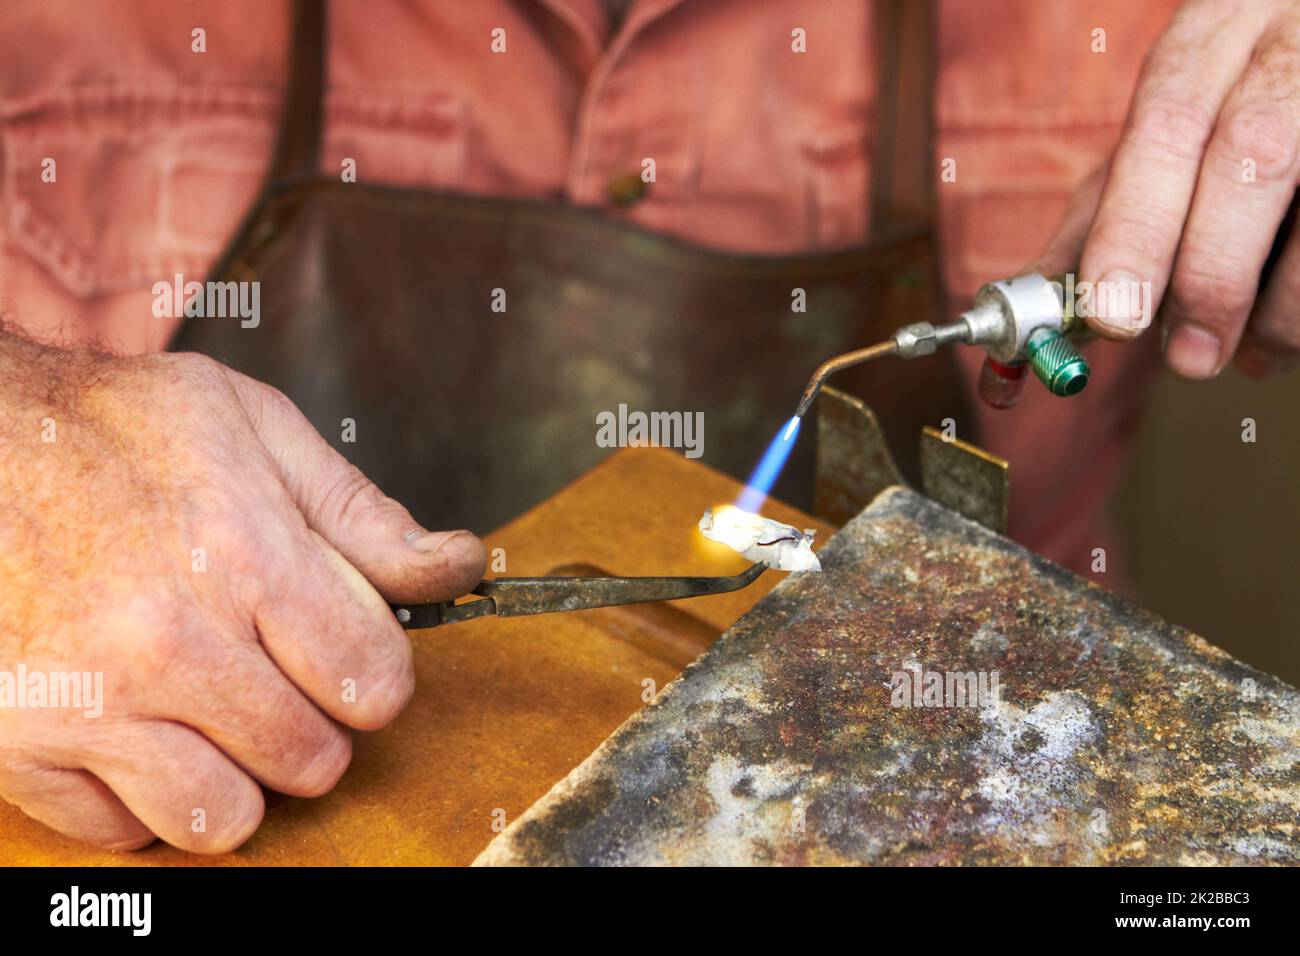 Anwendung von Wärme - Schmuckherstellung. Beschnittene Ansicht eines Juwelierherstellers bei der Arbeit mit einer kleinen Acetylenbrenner. Stockfoto